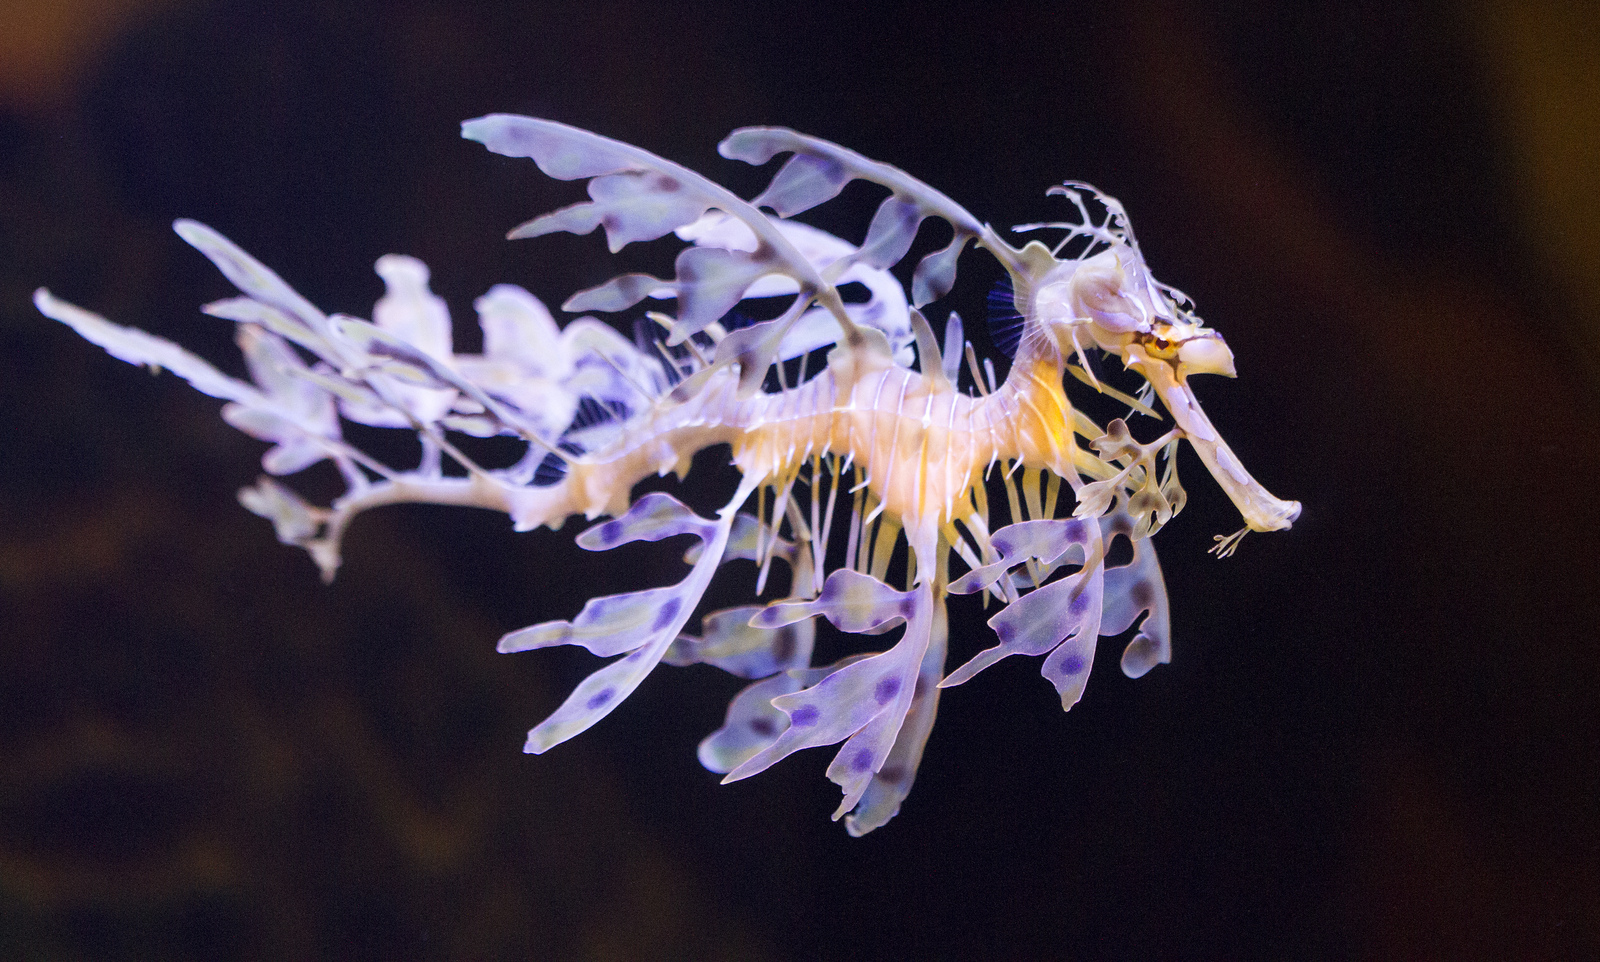 Vous êtes nombreux à avoir trouvé la bonne réponse : je suis effectivement l’hippocampe feuille, ou dragon de mer feuillu. © San Diego Shooter, Flickr, cc by nc nd 2.0